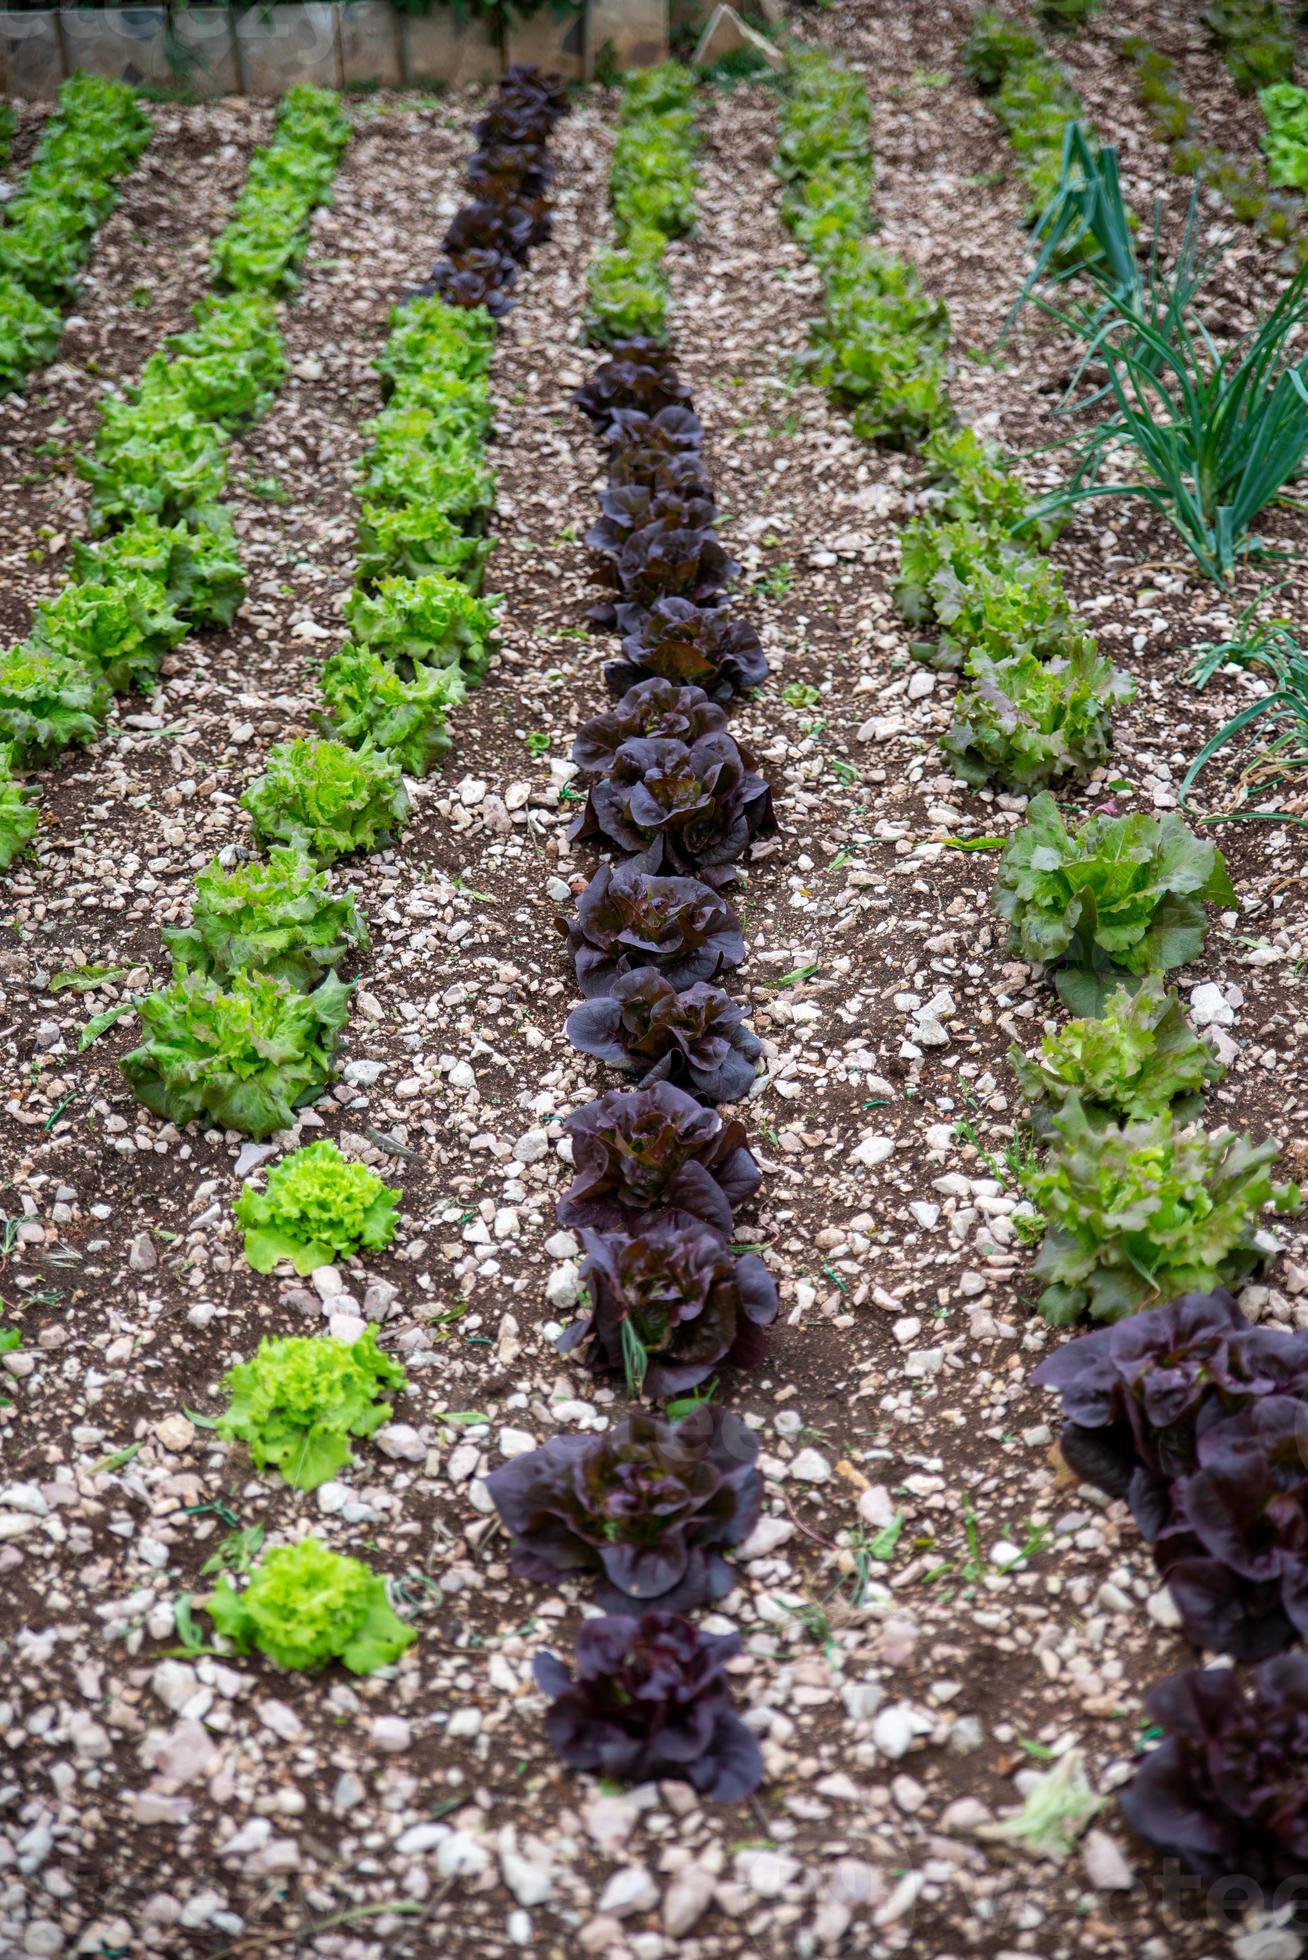 de saladeplantage foto